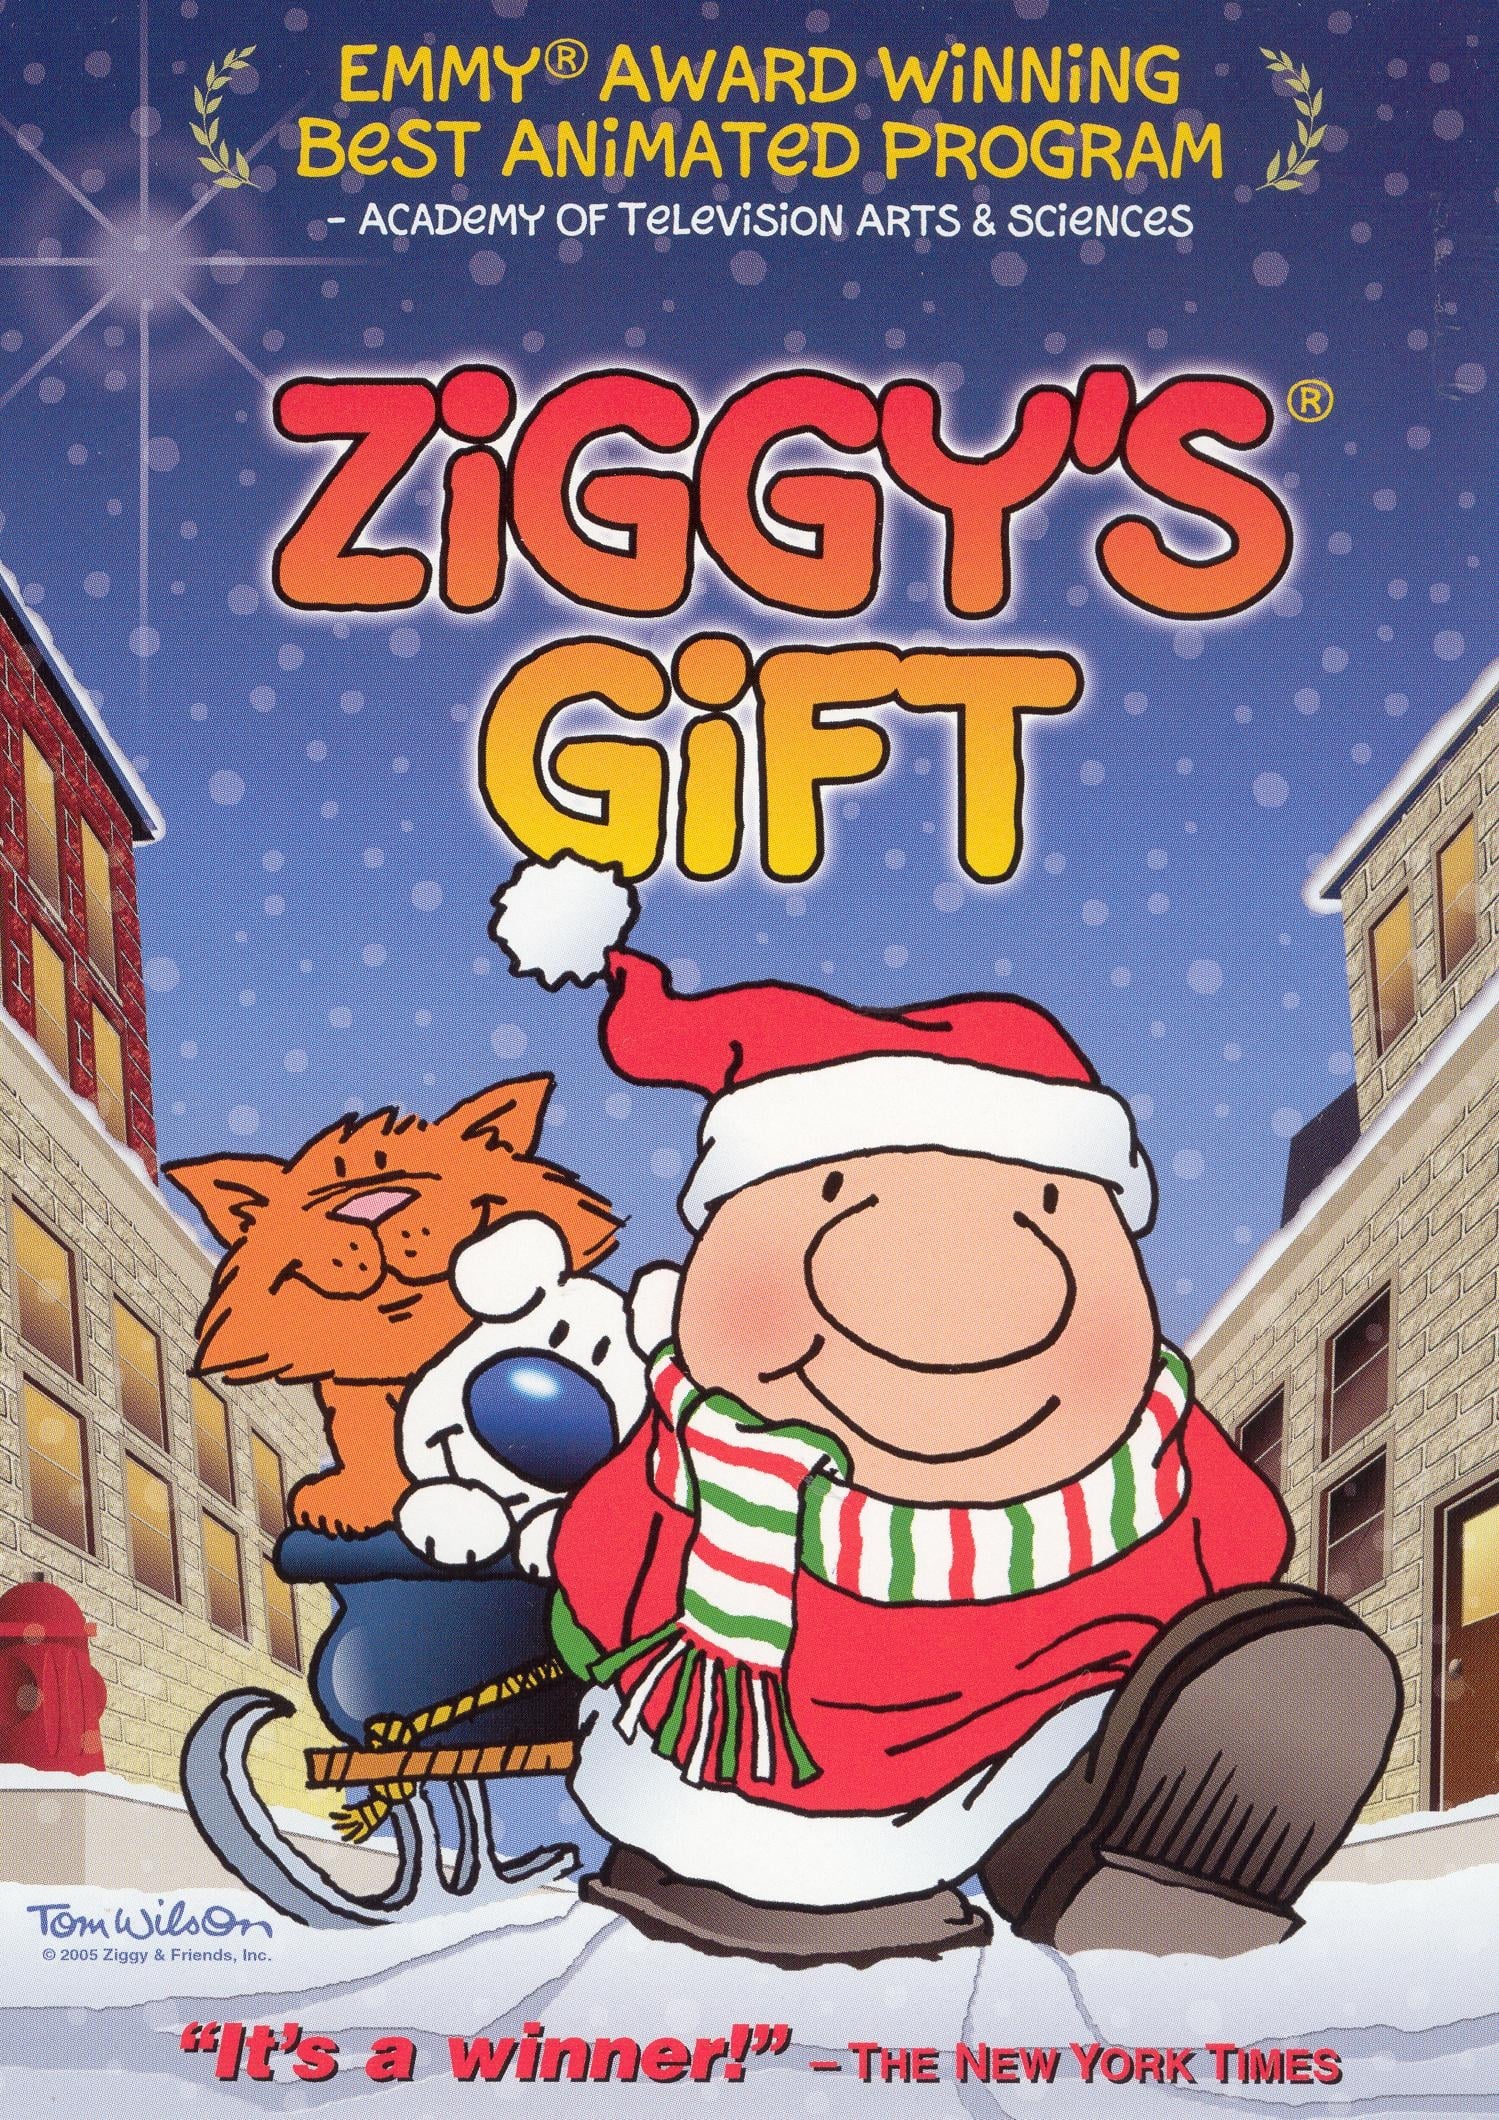 Ziggy's Gift streaming